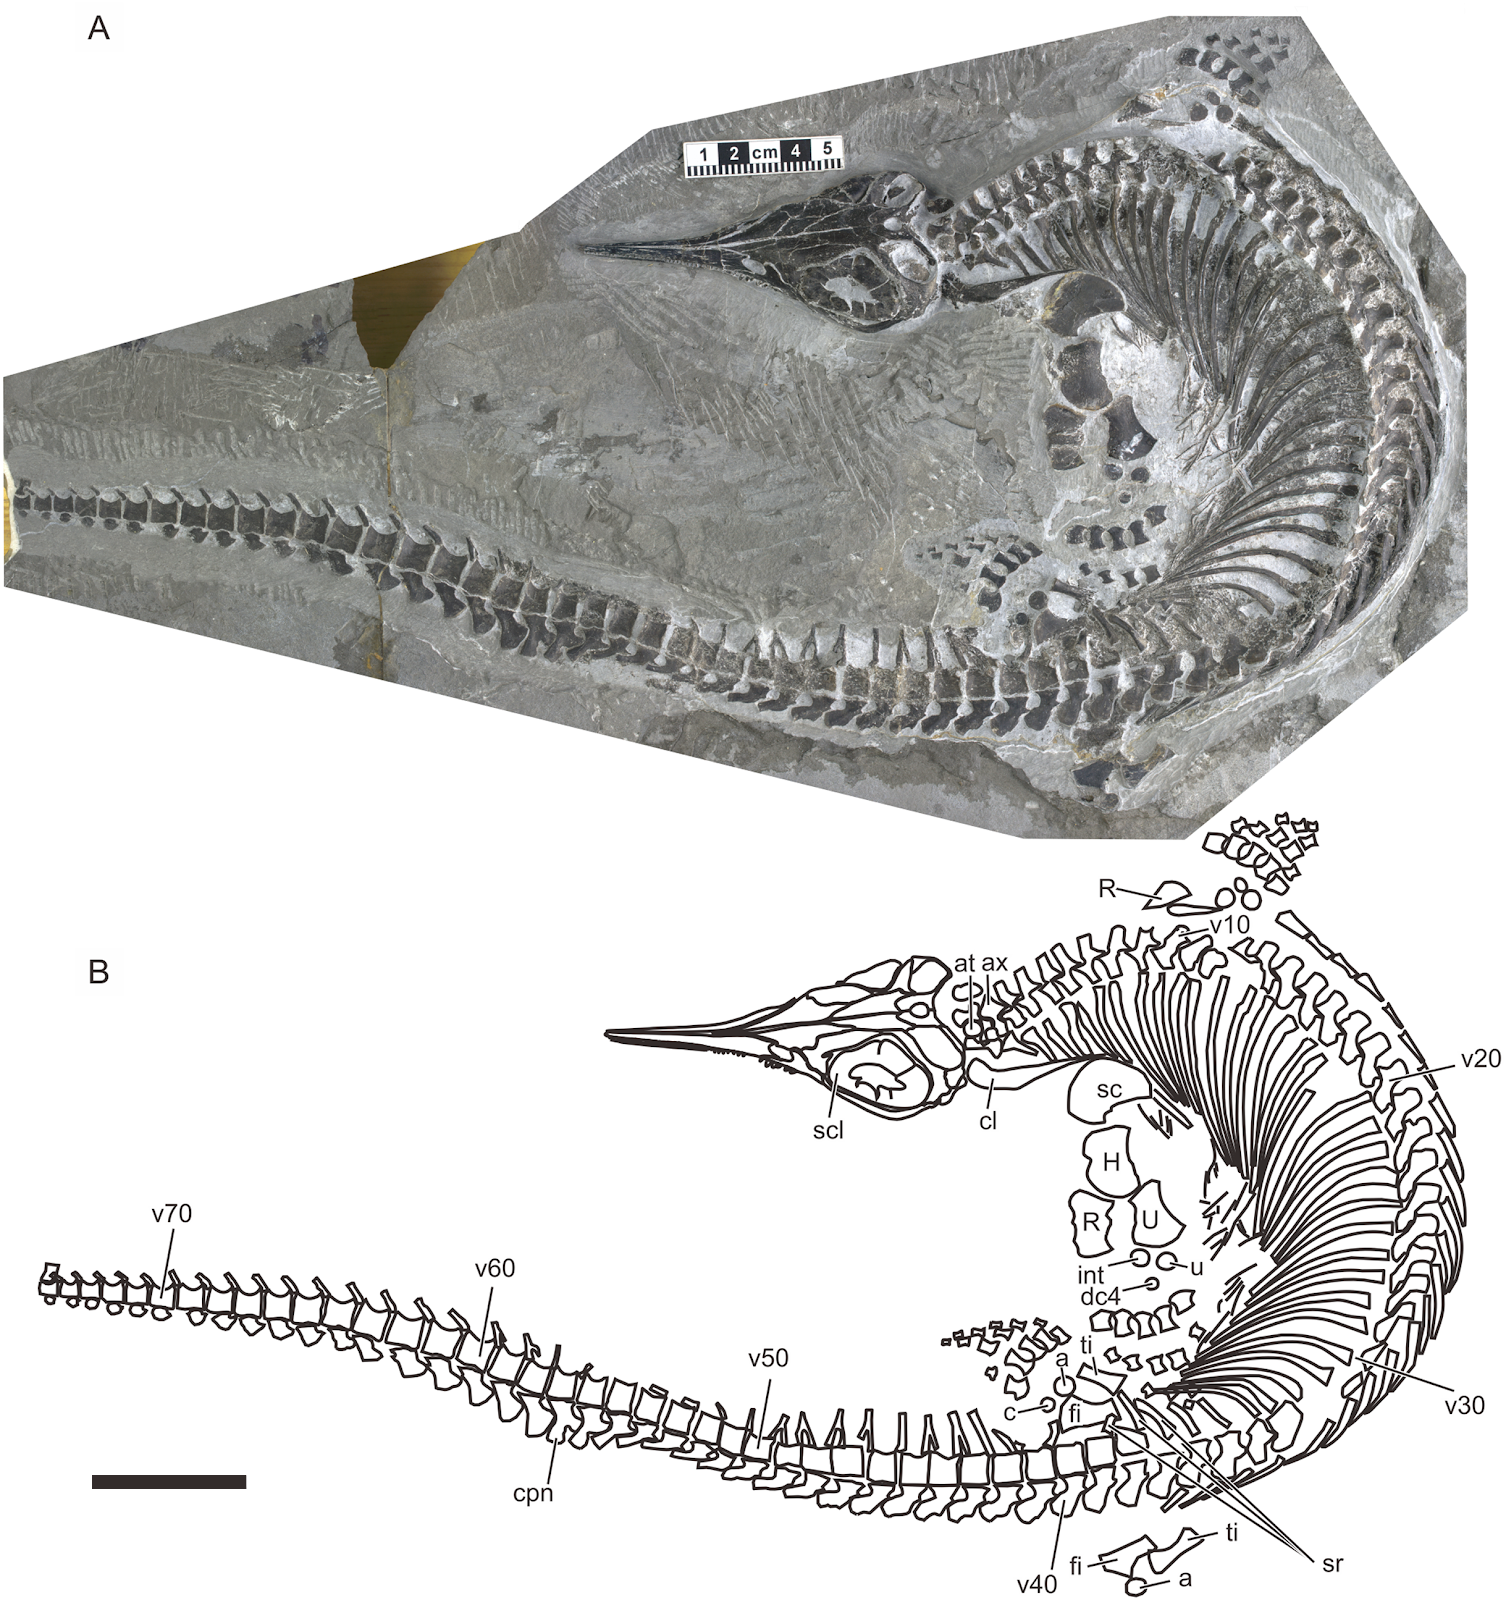 Chaohusaurus brevifemoralis